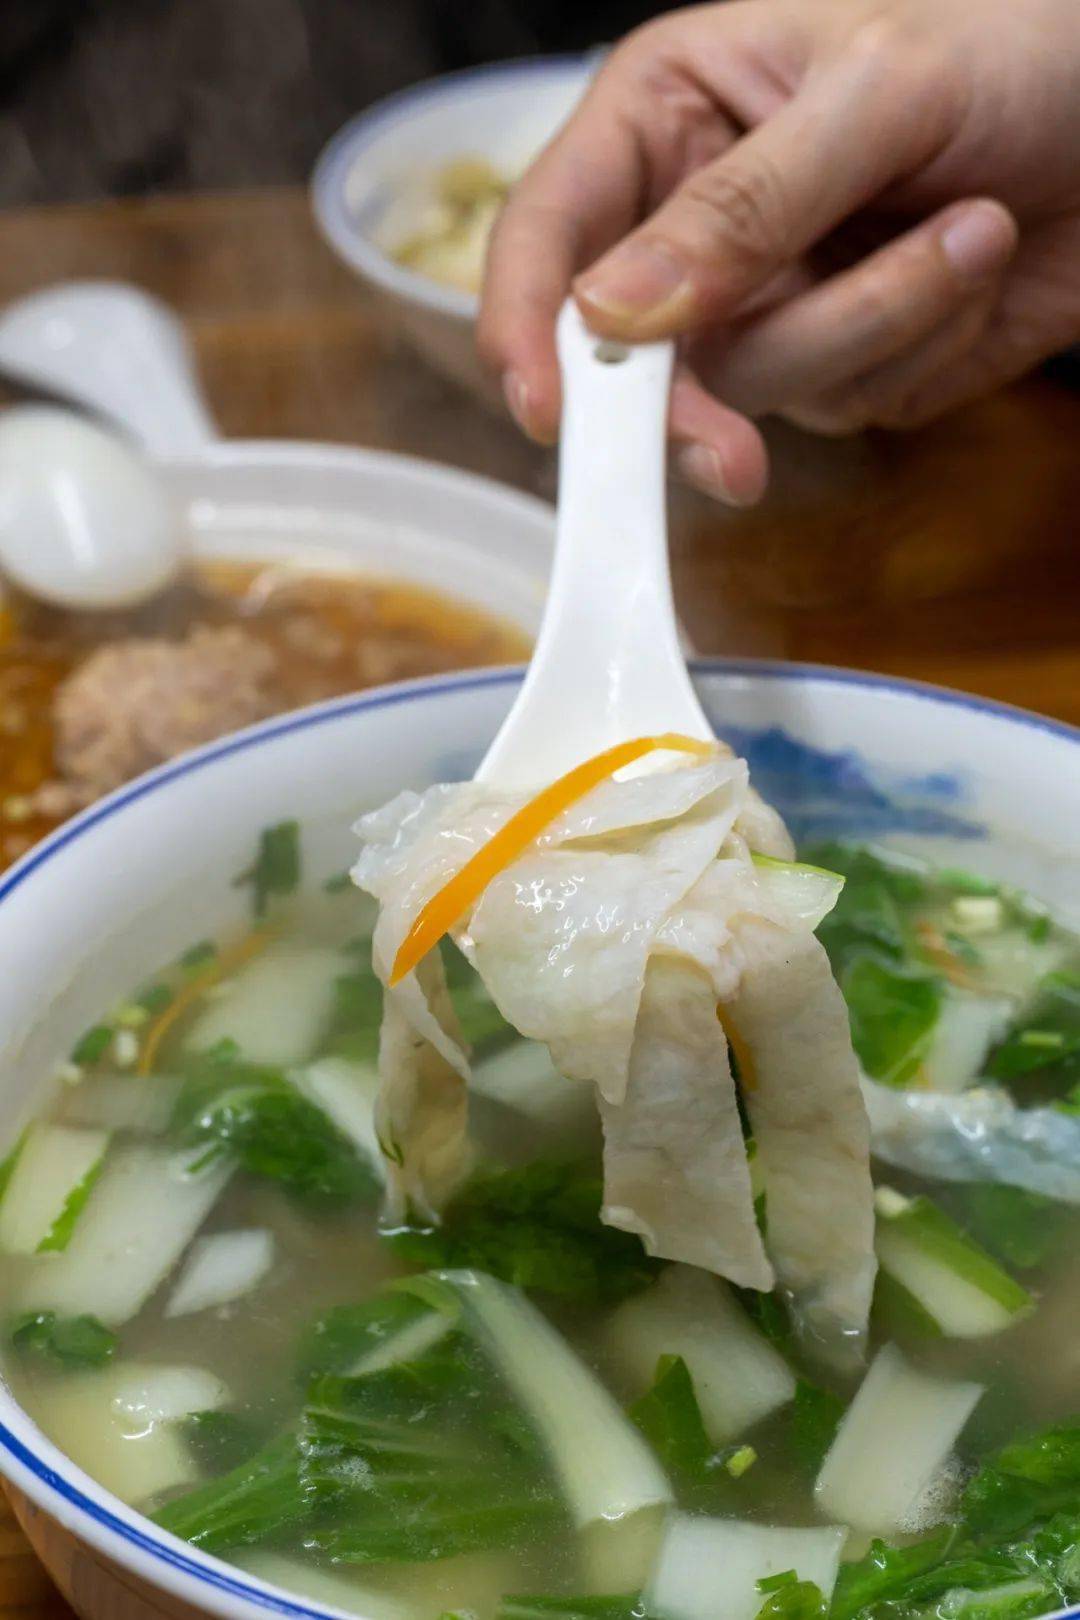 在传统敲鱼汤的基础上还加了肉燕,鱼汤清淡却不失鲜味,敲鱼片润滑,香